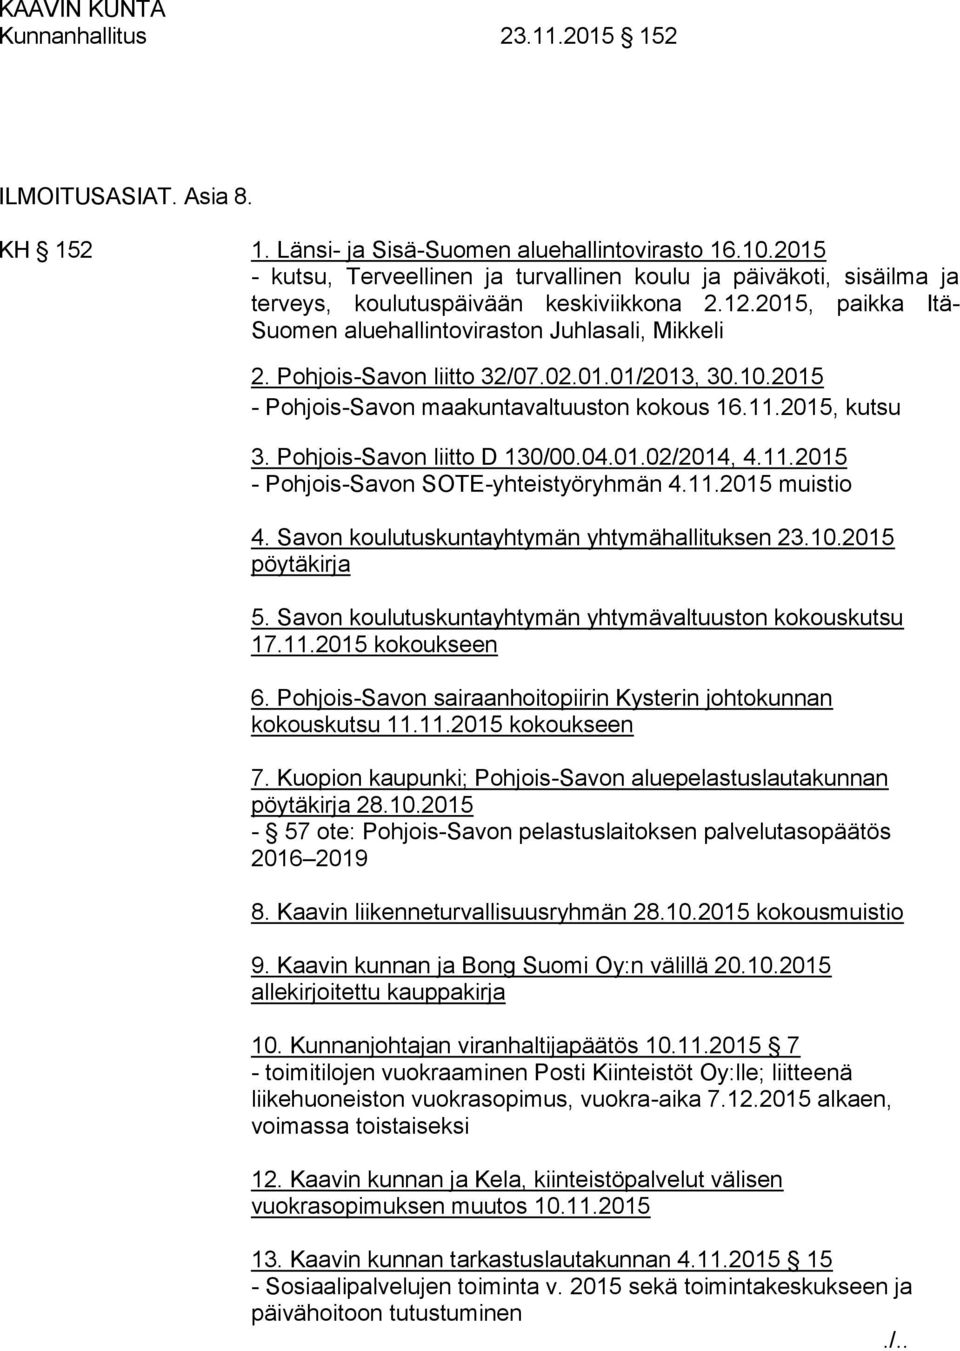 Pohjois-Savon liitto 32/07.02.01.01/2013, 30.10.2015 - Pohjois-Savon maakuntavaltuuston kokous 16.11.2015, kutsu 3. Pohjois-Savon liitto D 130/00.04.01.02/2014, 4.11.2015 - Pohjois-Savon SOTE-yhteistyöryhmän 4.